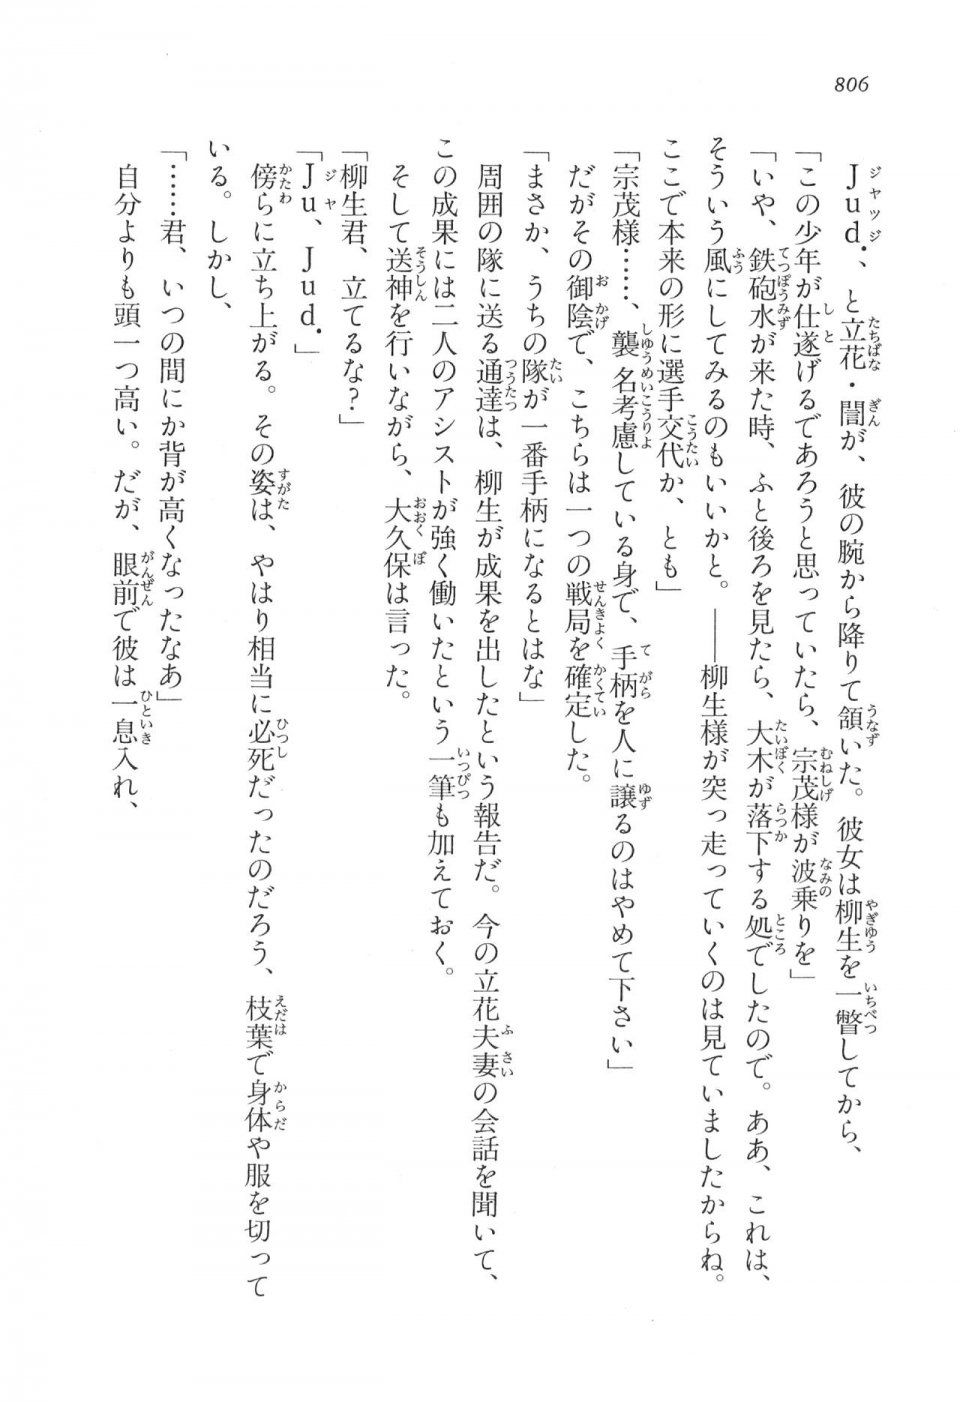 Kyoukai Senjou no Horizon LN Vol 17(7B) - Photo #808